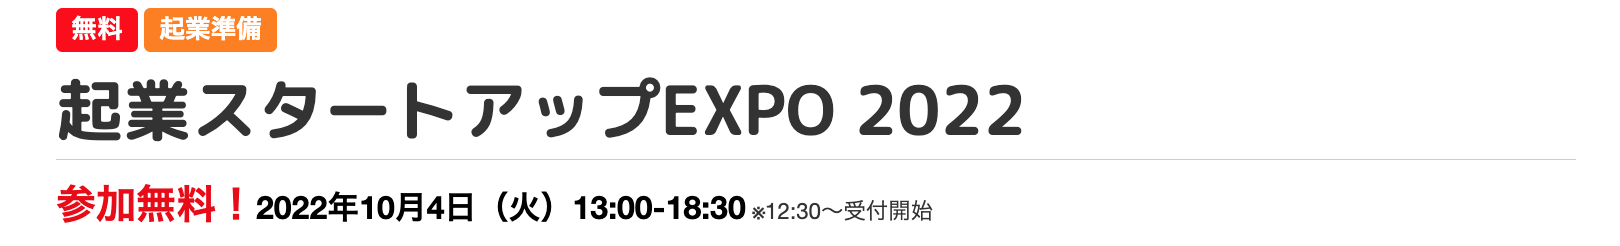 【参加無料】2022年10月4日(火)「起業スタートアップEXPO 2022」